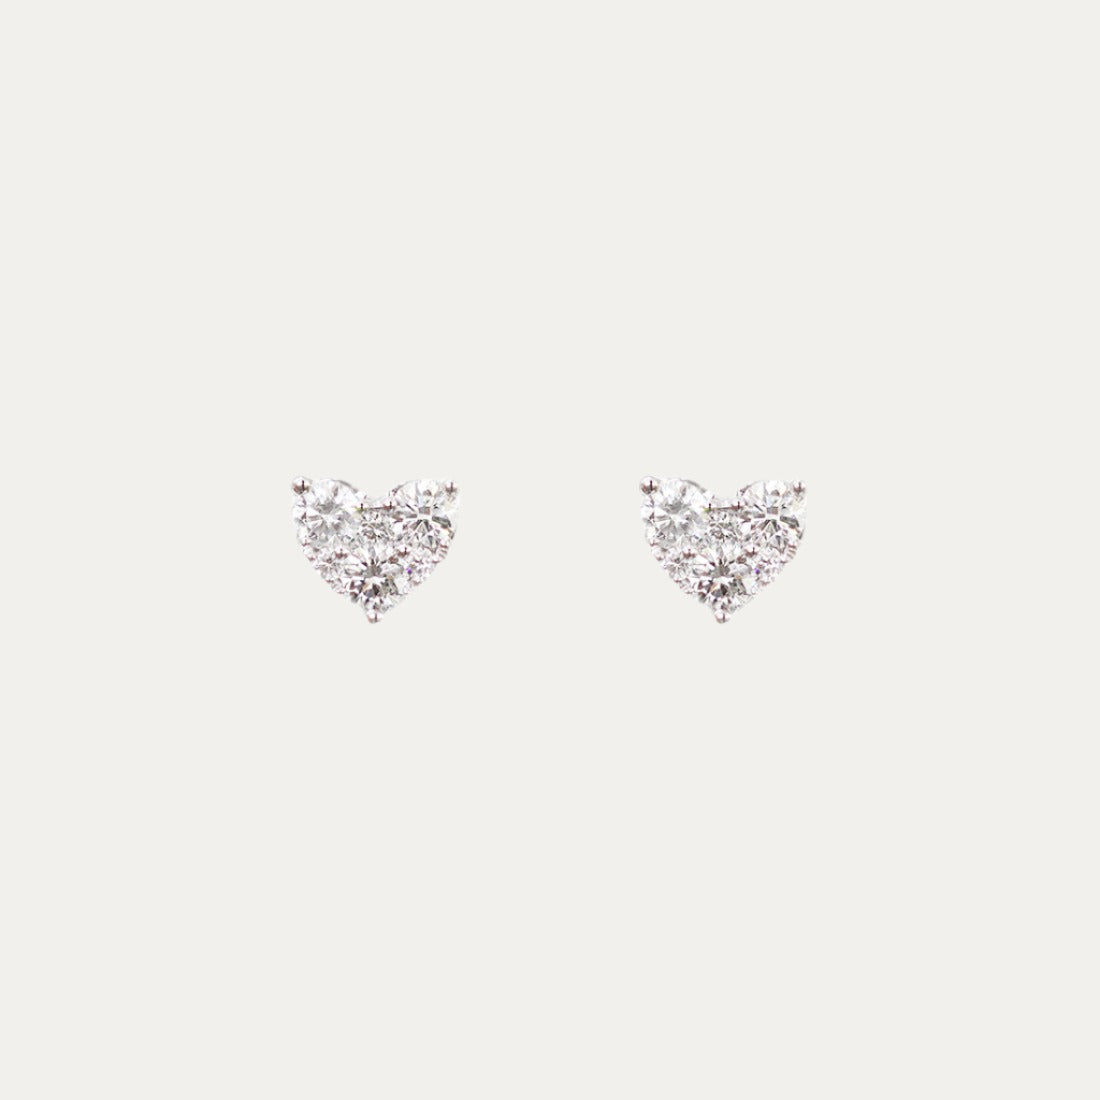 18k White Gold 0.48ct Heart Shape Diamond Earrings, Pair